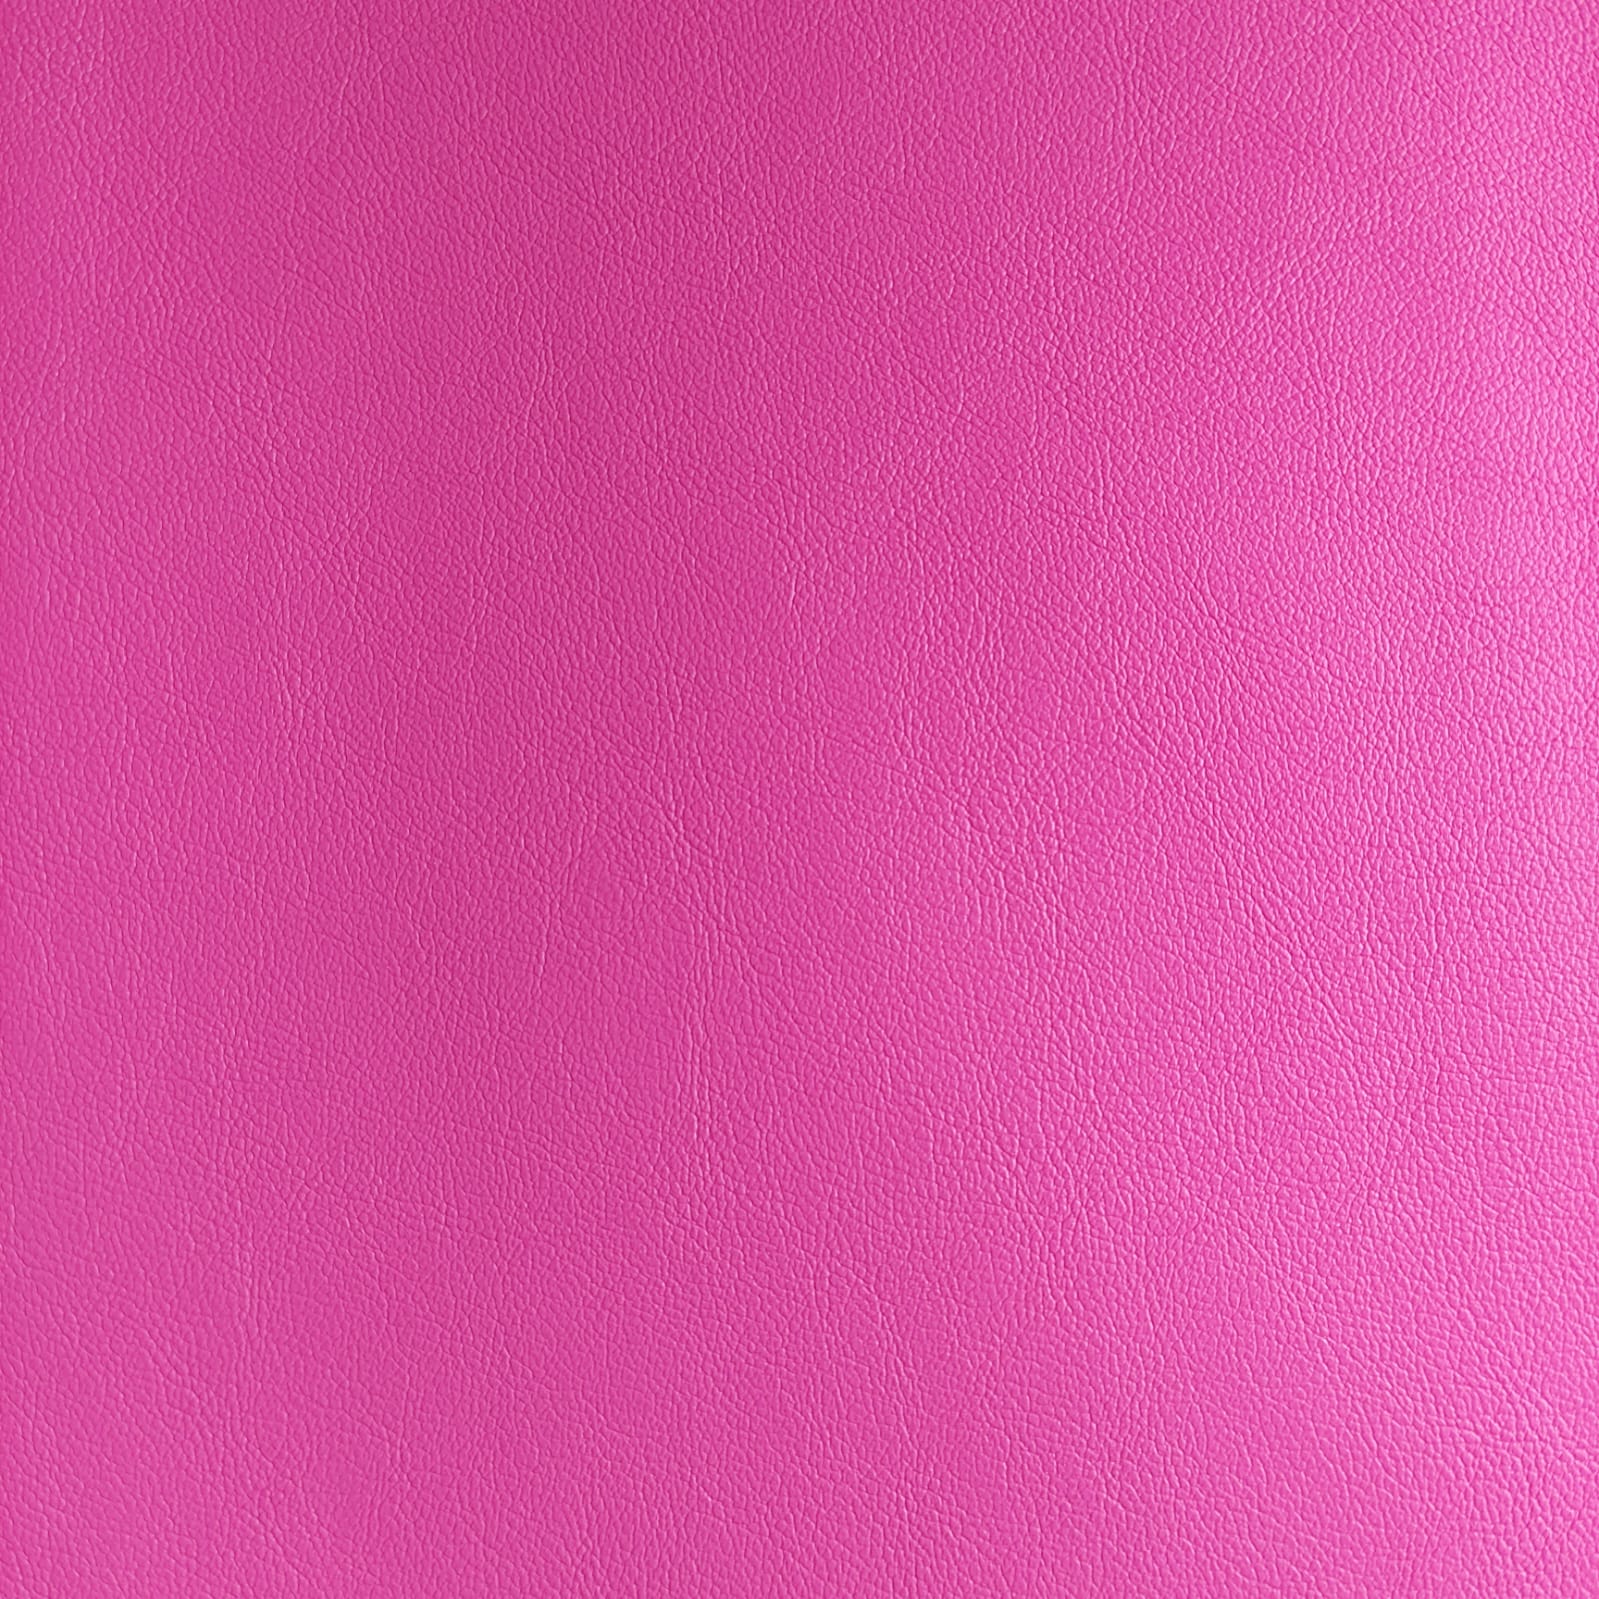 Marilinhas Tecidos - Neo couro - corino - cor rosa pink - Korino